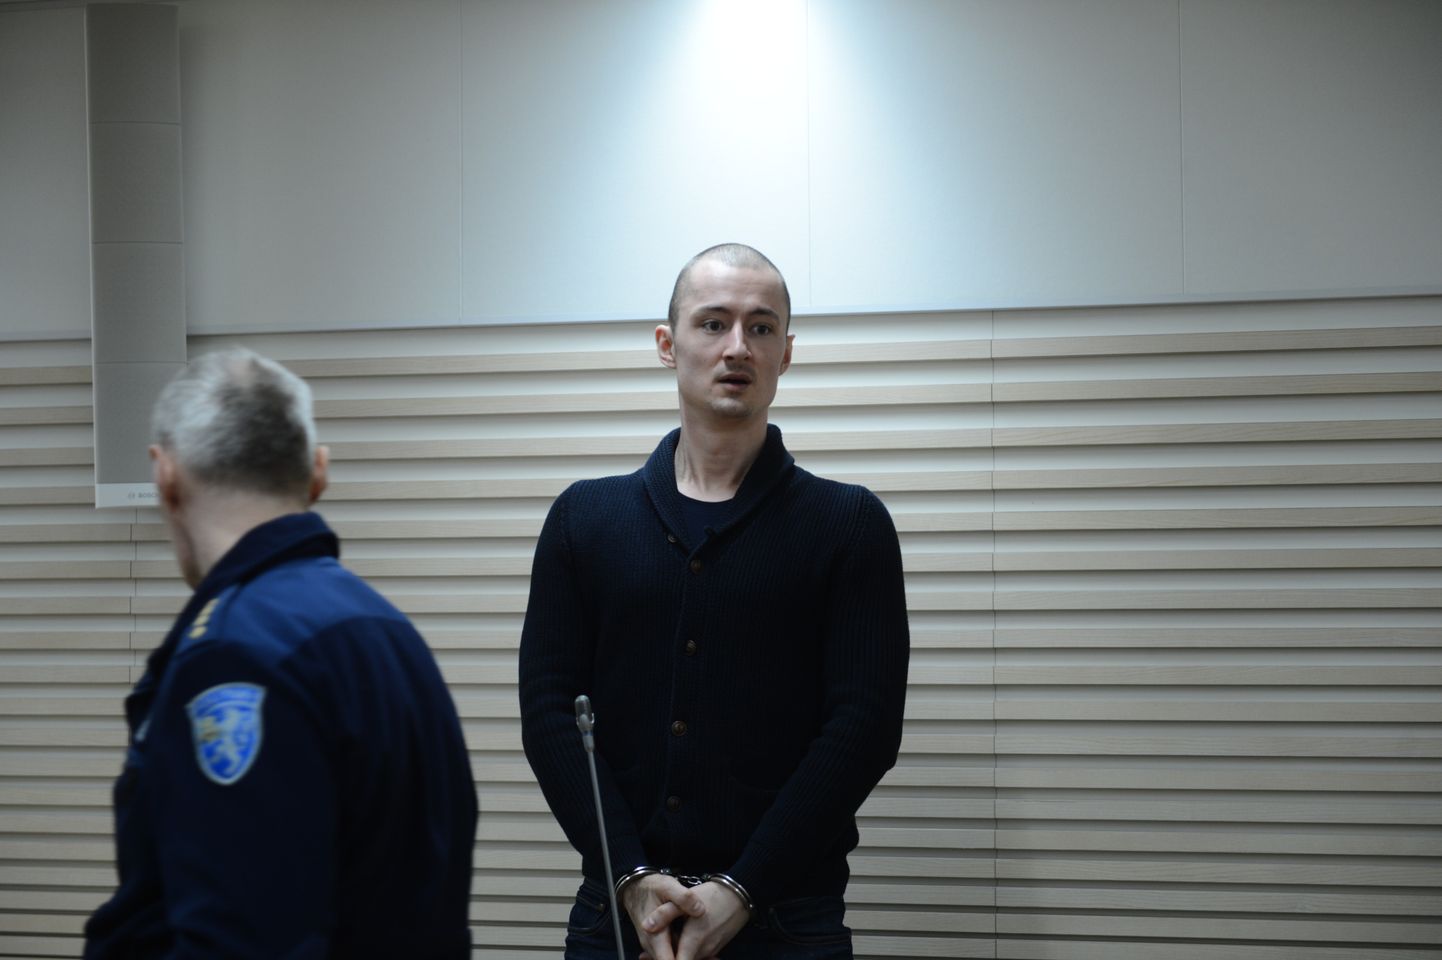 Londonis prantslanna mõrvas kahtlustatava Eesti kodanik Kirill Belorusovi väljaandmine.